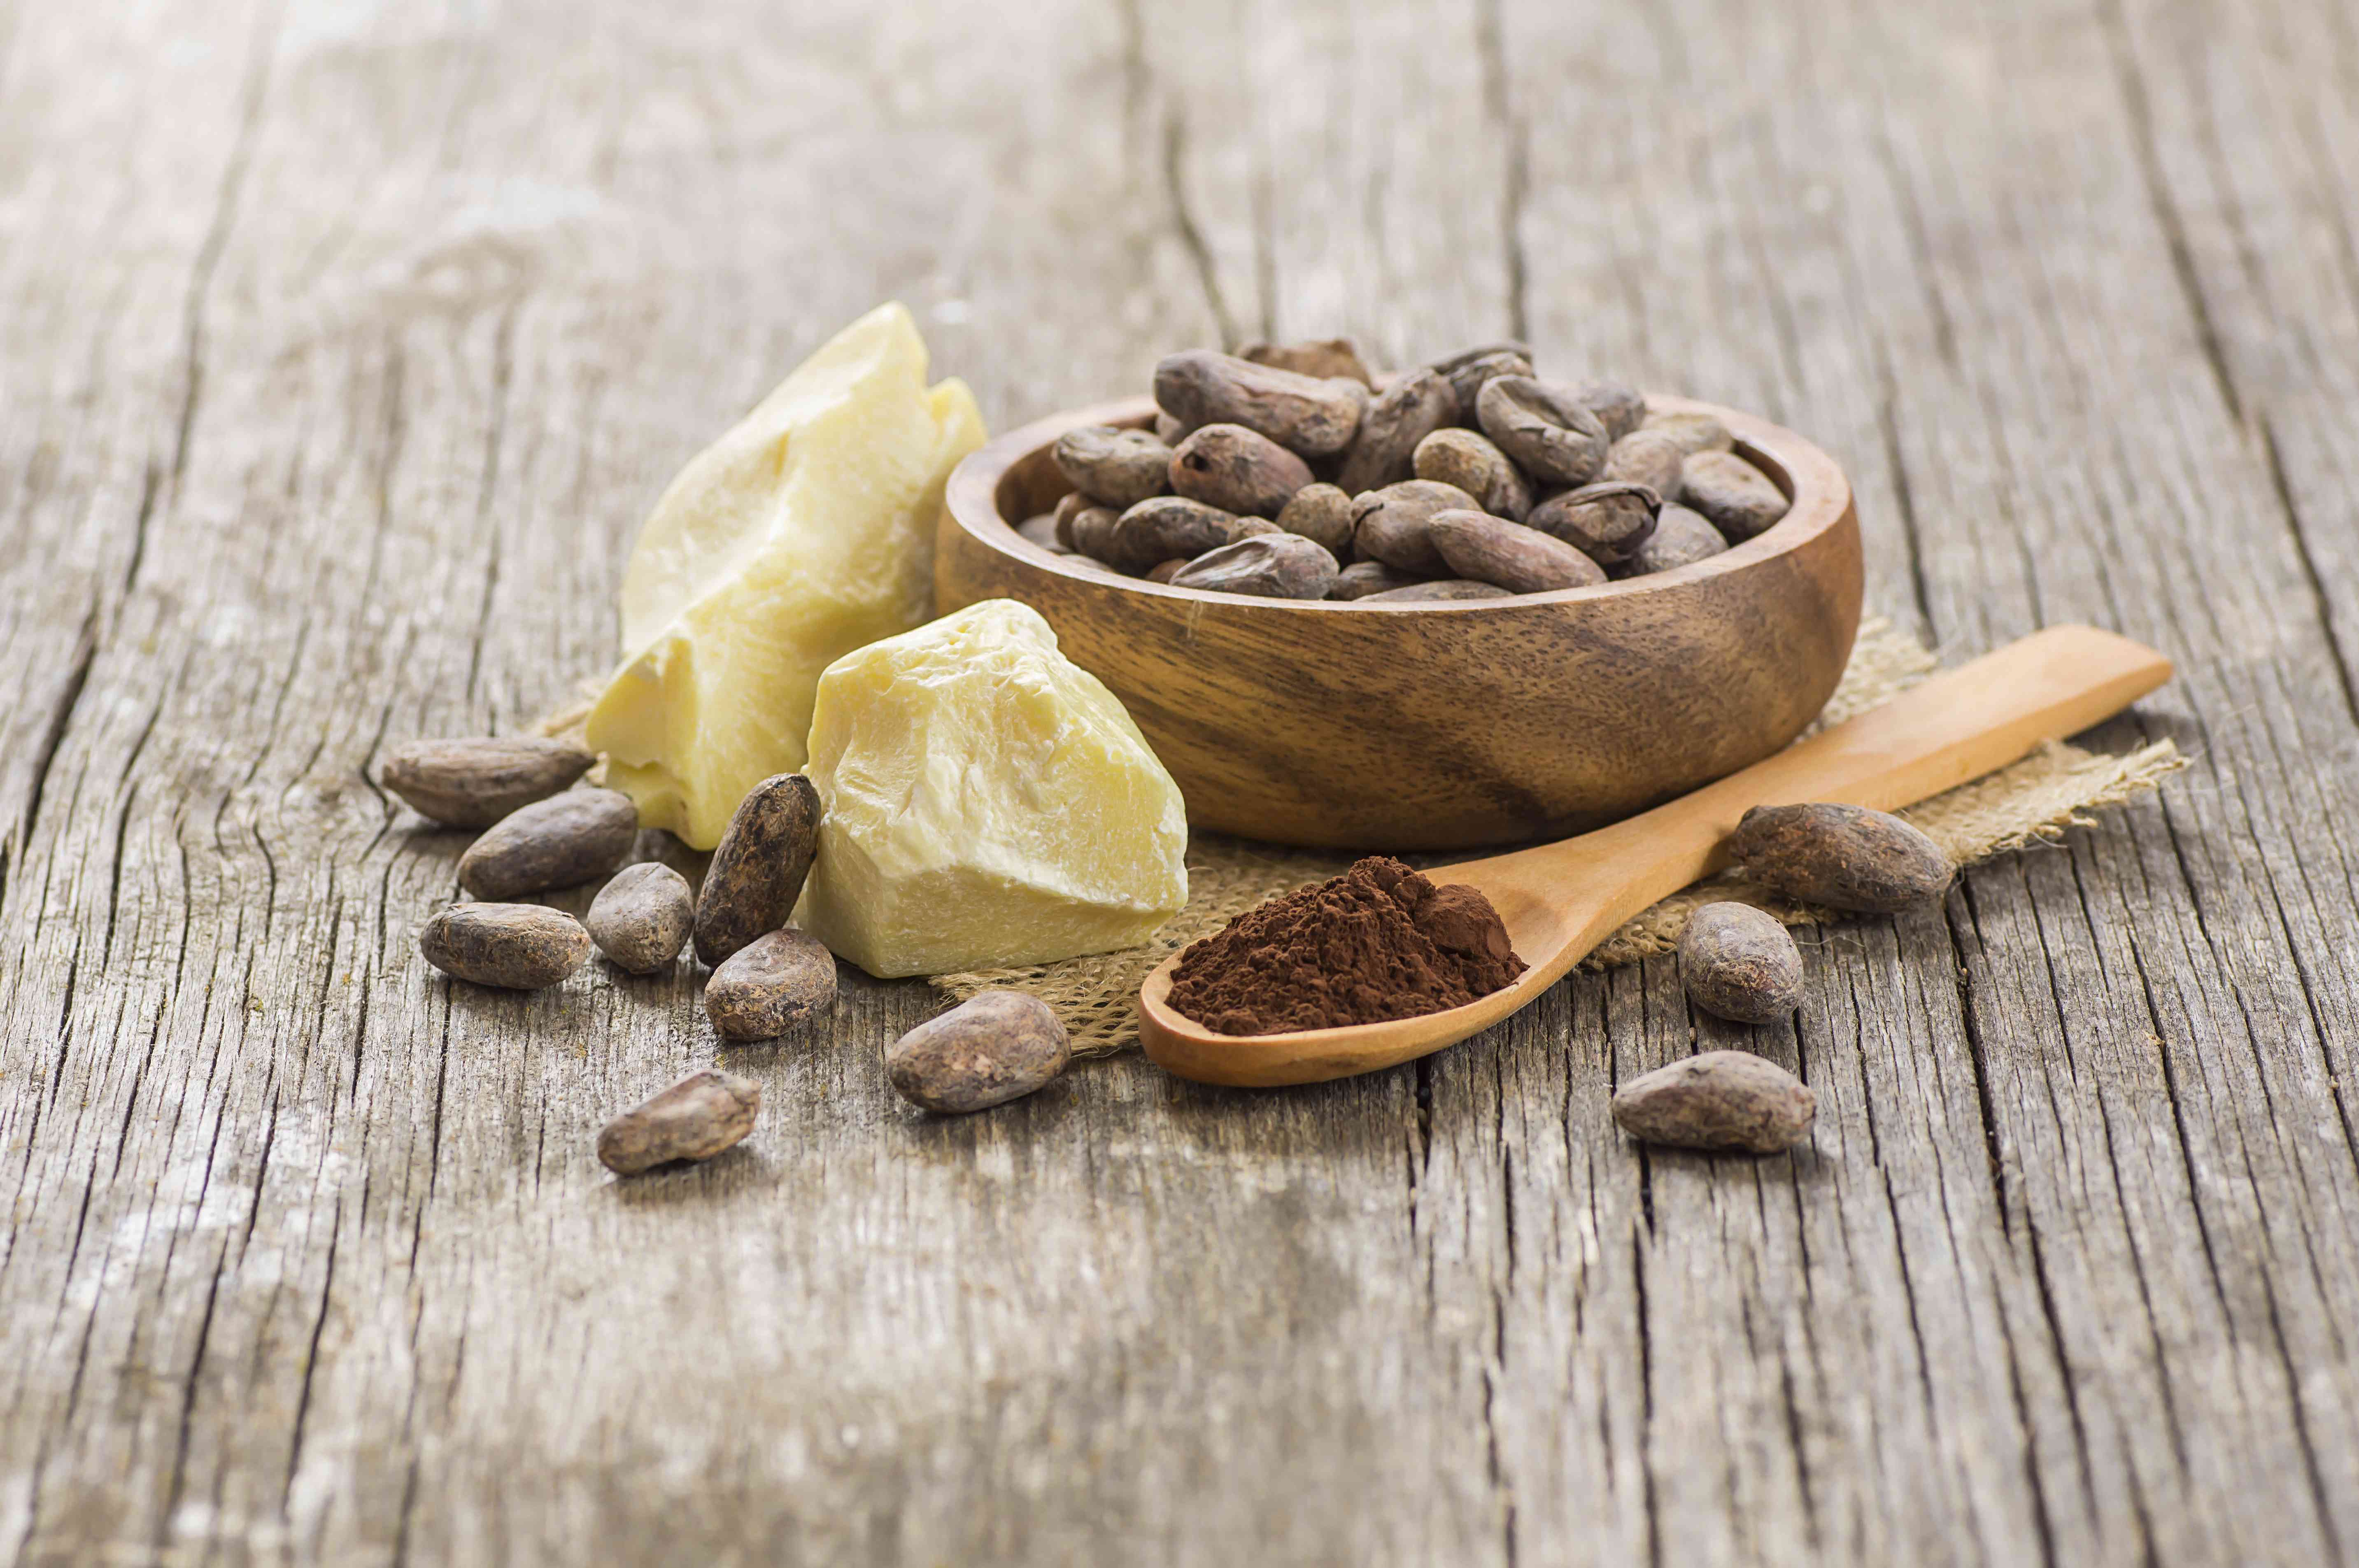 可可脂或可可豆固体油与可可粉在勺子和生可可豆在木碗在乡村背景。